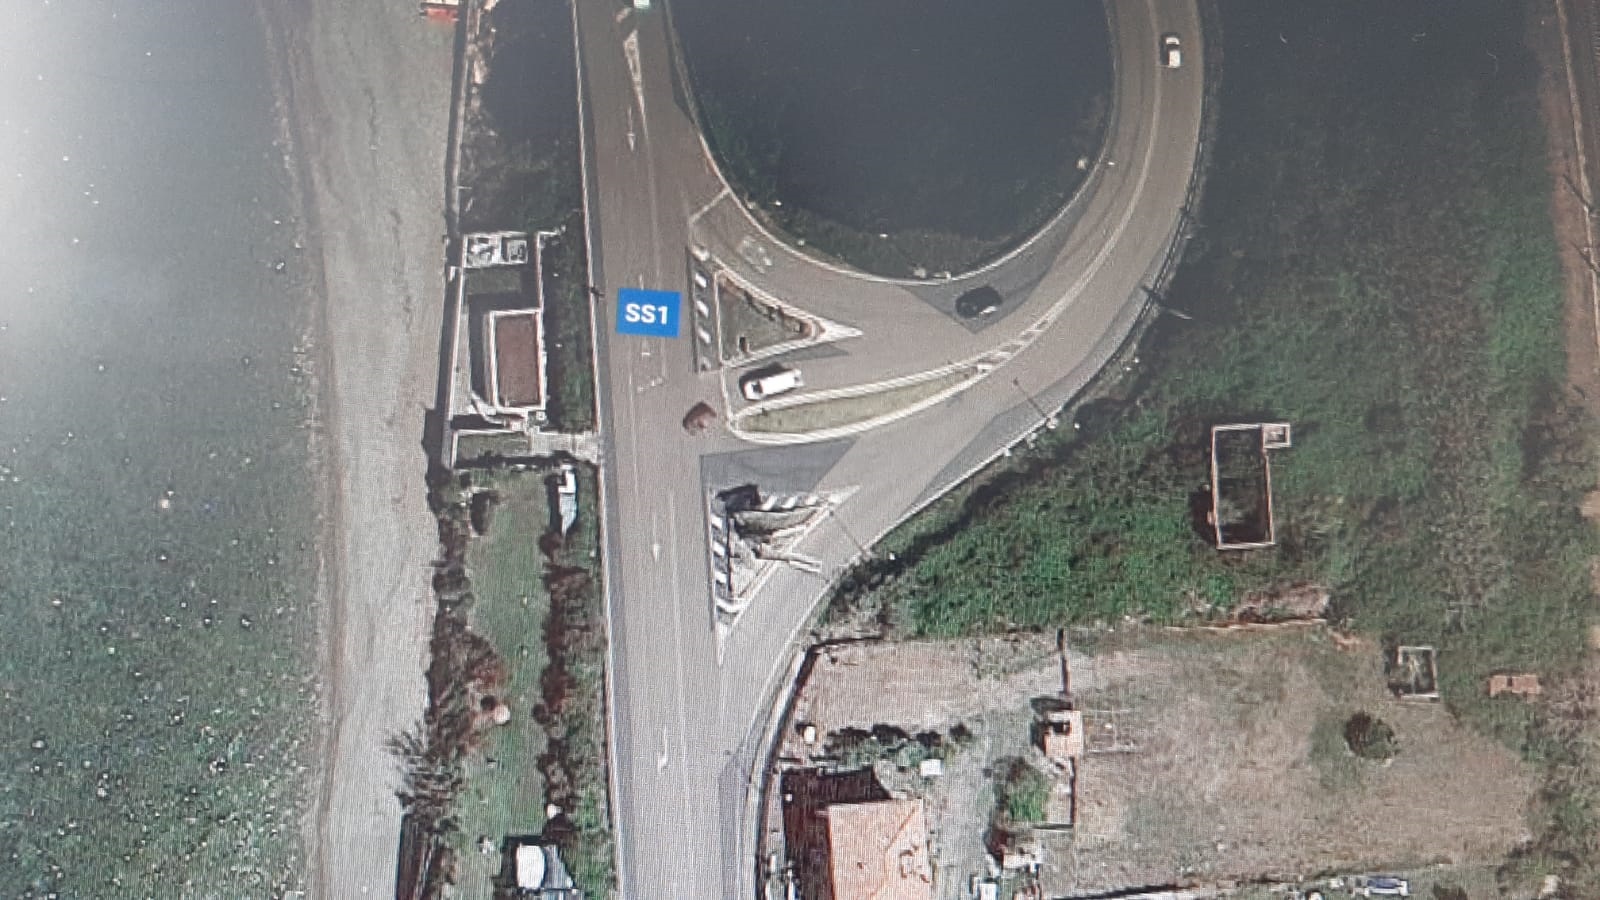 Avviato l’iter per realizzazione una rotatoria su via Aurelia presso lo svincolo A12 Civitavecchia sud